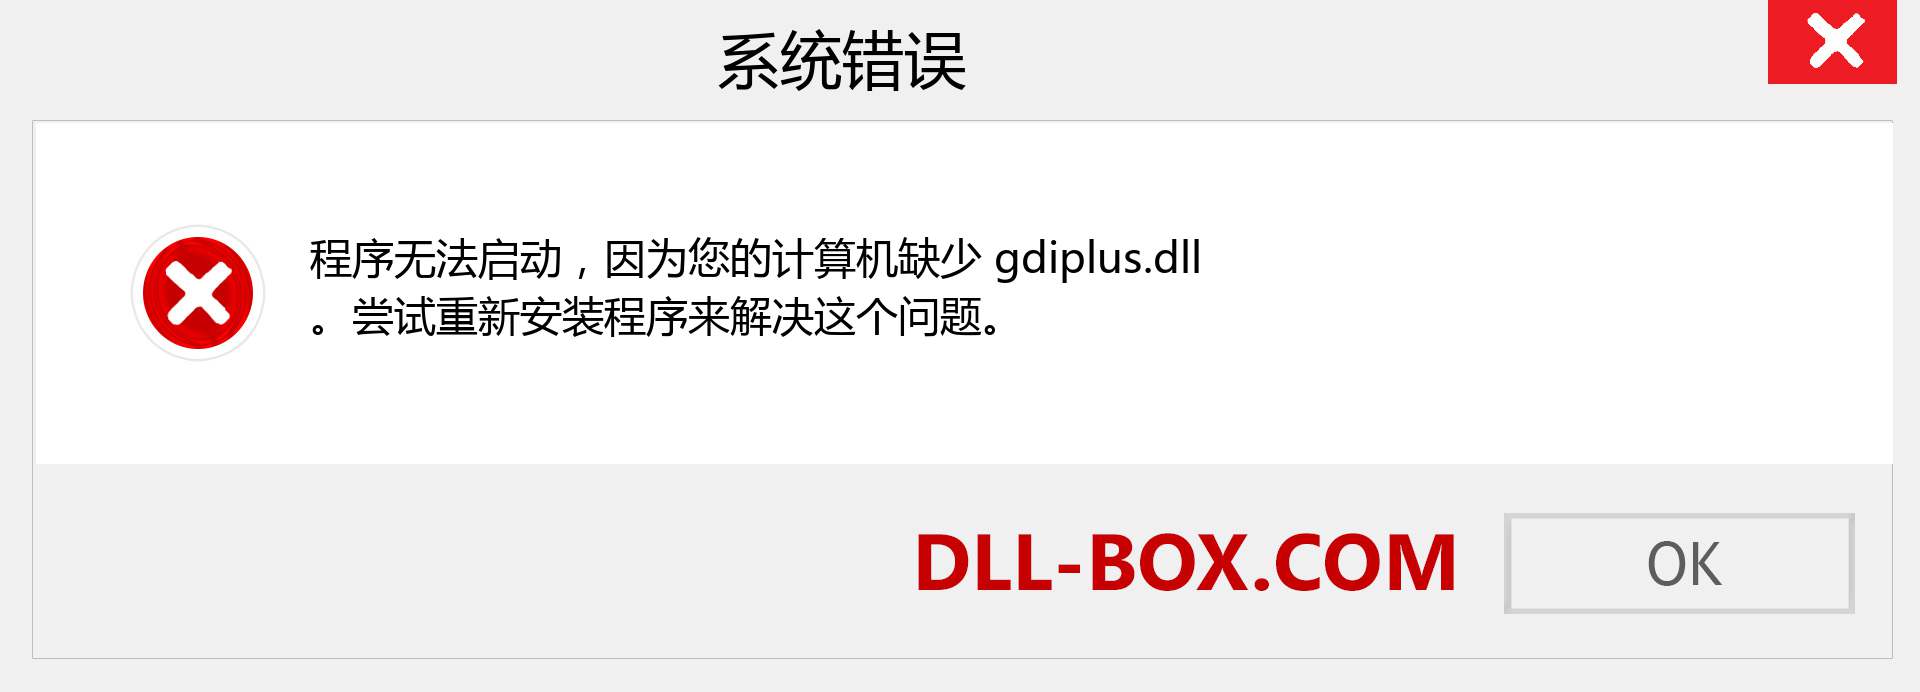 gdiplus.dll 文件丢失？。 适用于 Windows 7、8、10 的下载 - 修复 Windows、照片、图像上的 gdiplus dll 丢失错误